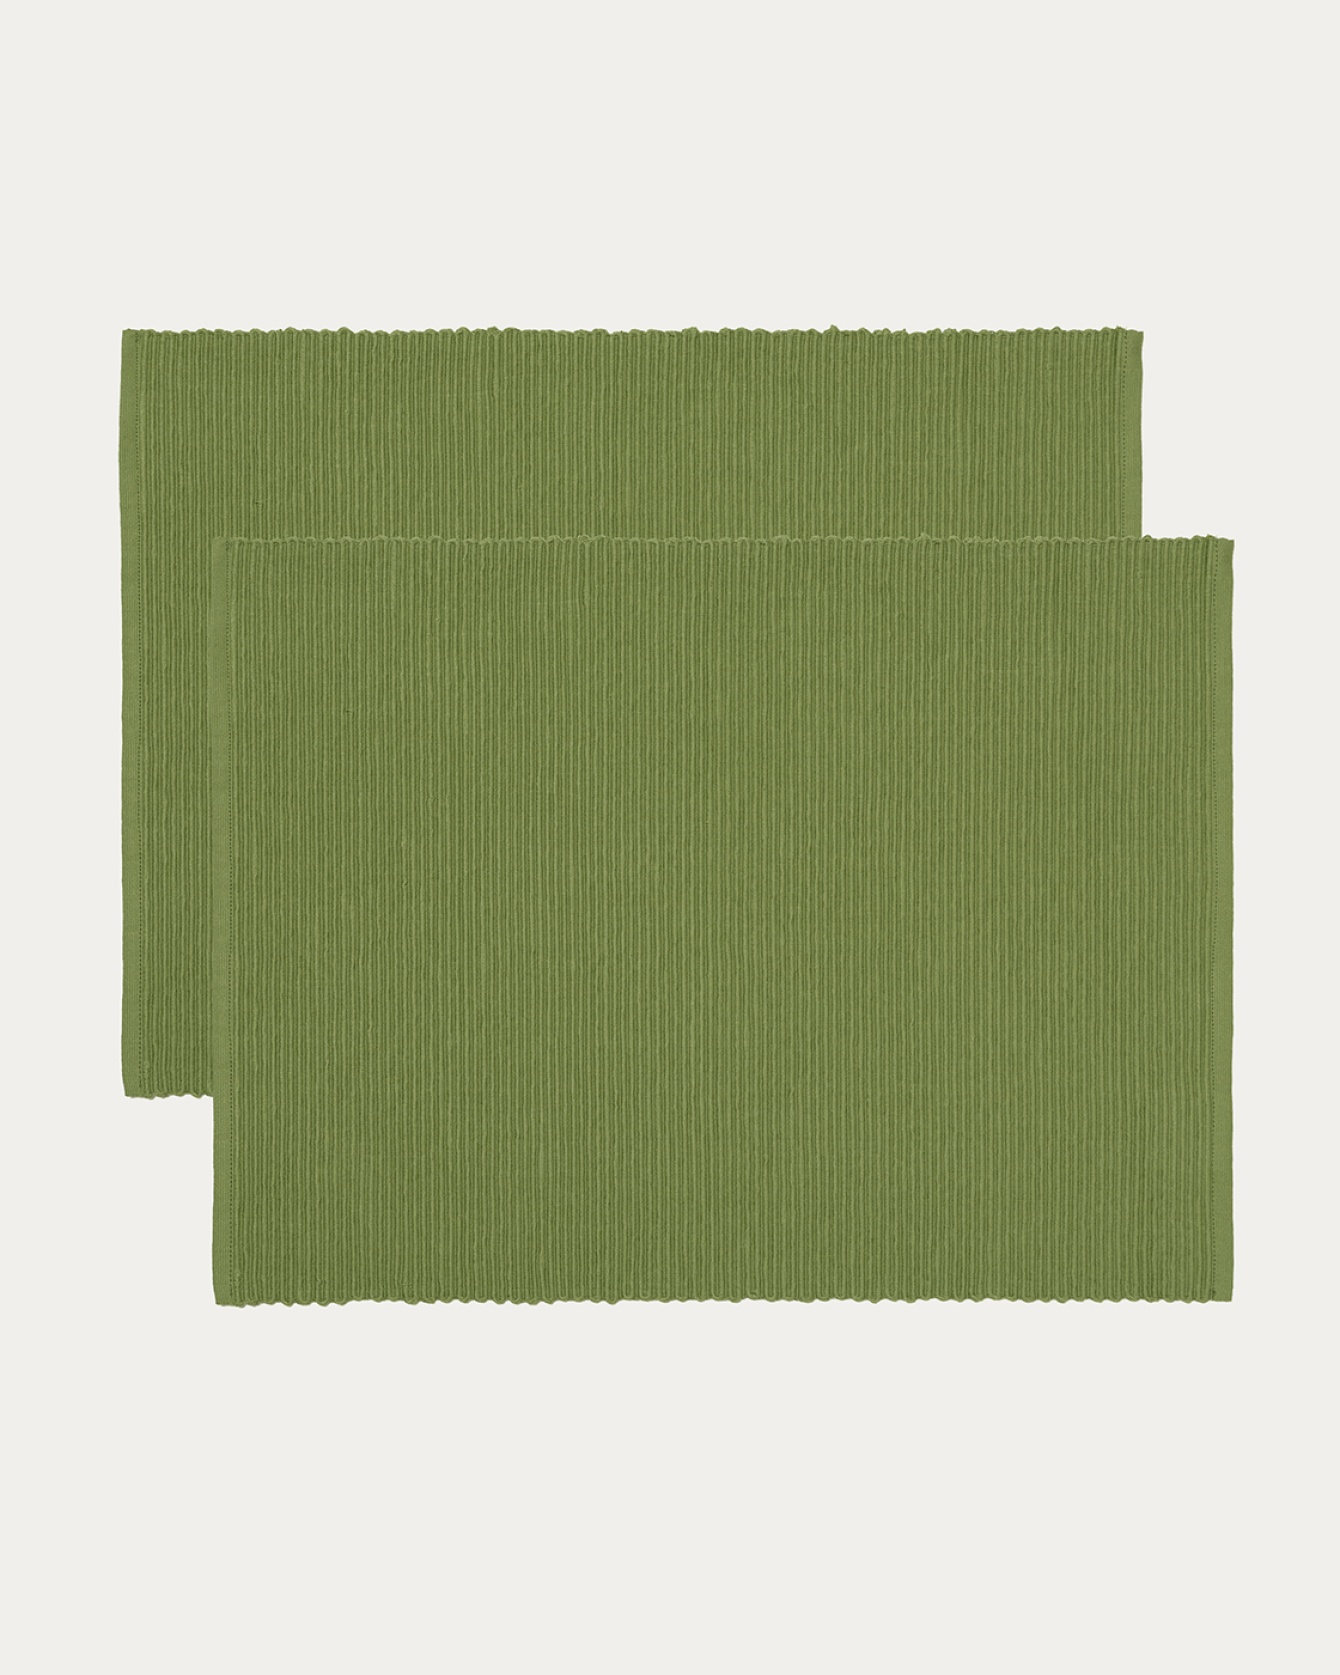 Image du produit set de table UNI vert mousse en coton doux de qualité côtelée de LINUM DESIGN. Taille 35 x 46 cm et vendu en lot de 2.